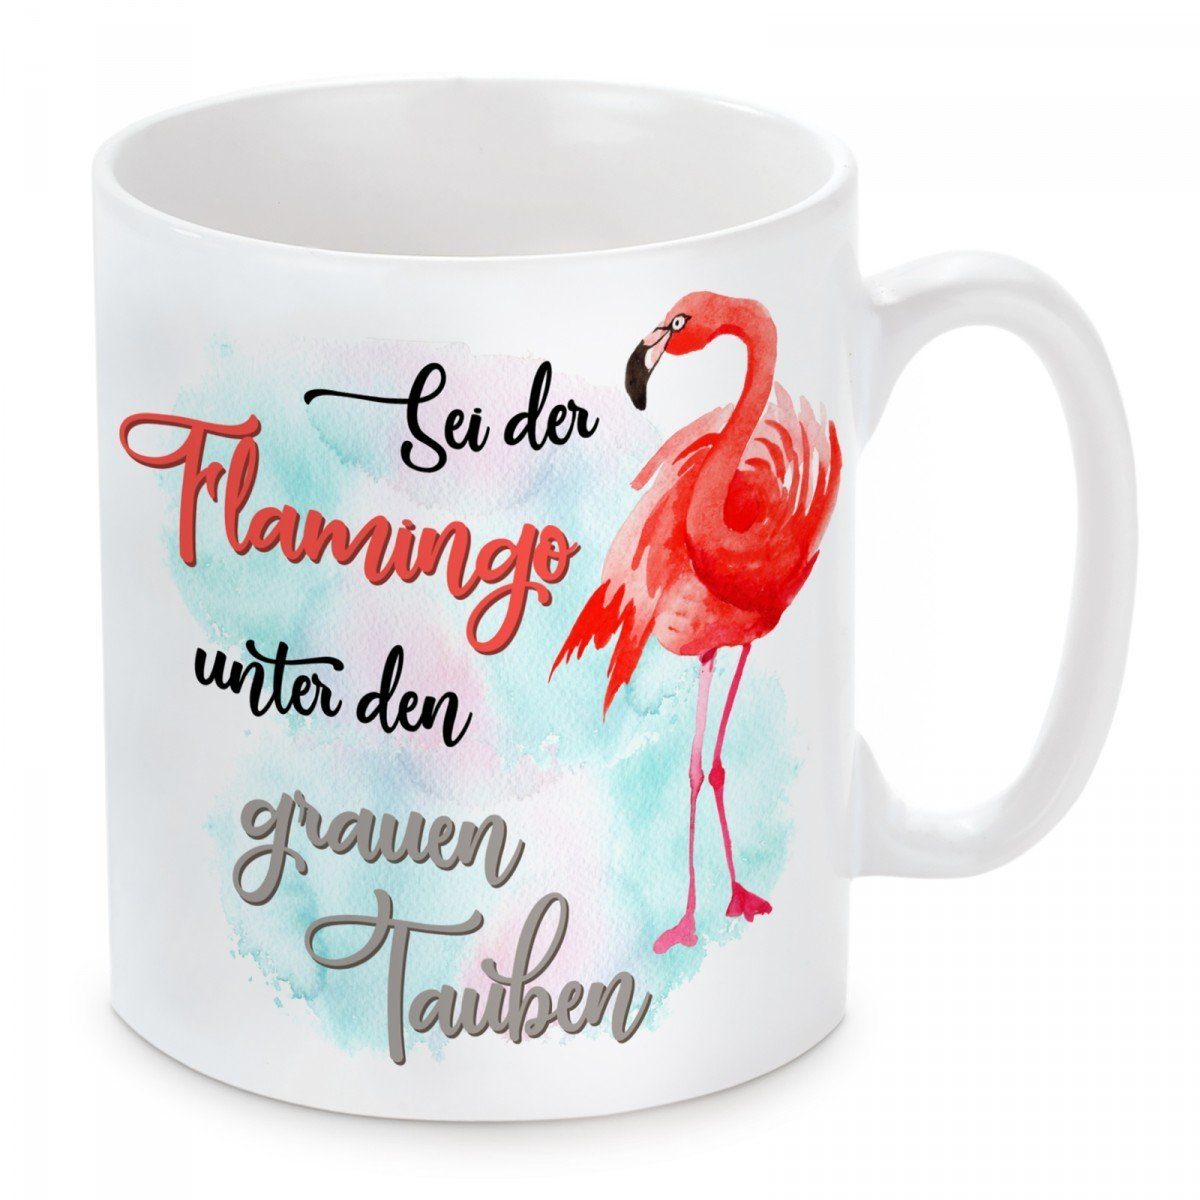 Kaffeebecher Tauben, und Keramik, den unter Kaffeetasse Tasse mikrowellengeeignet Sei grauen Herzbotschaft Motiv der Flamingo mit spülmaschinenfest